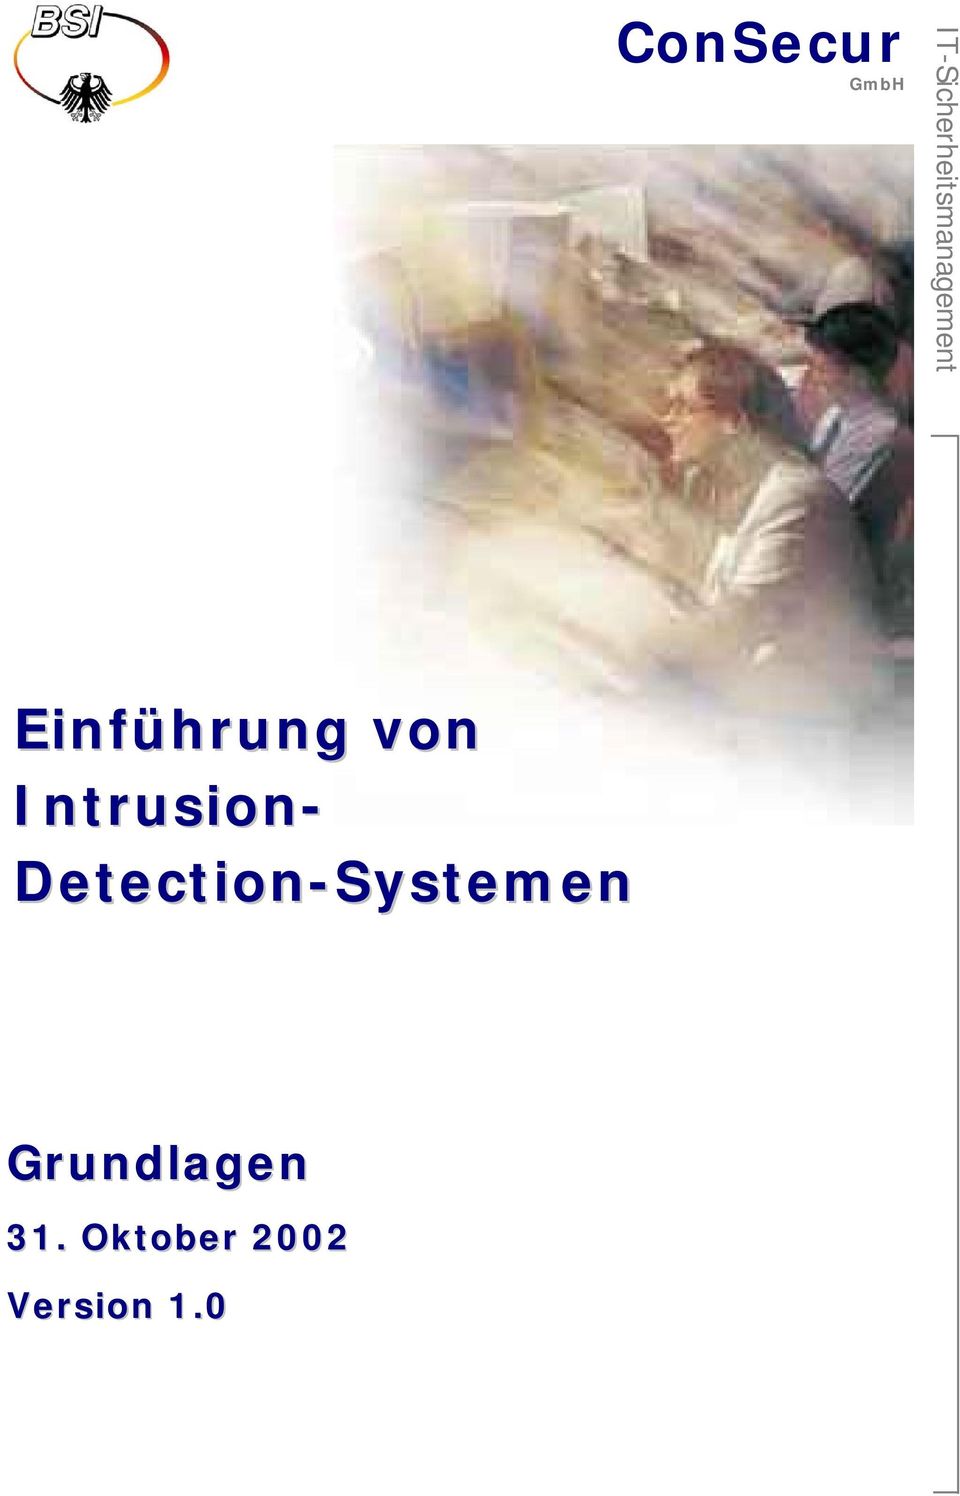 Detection-Systemen